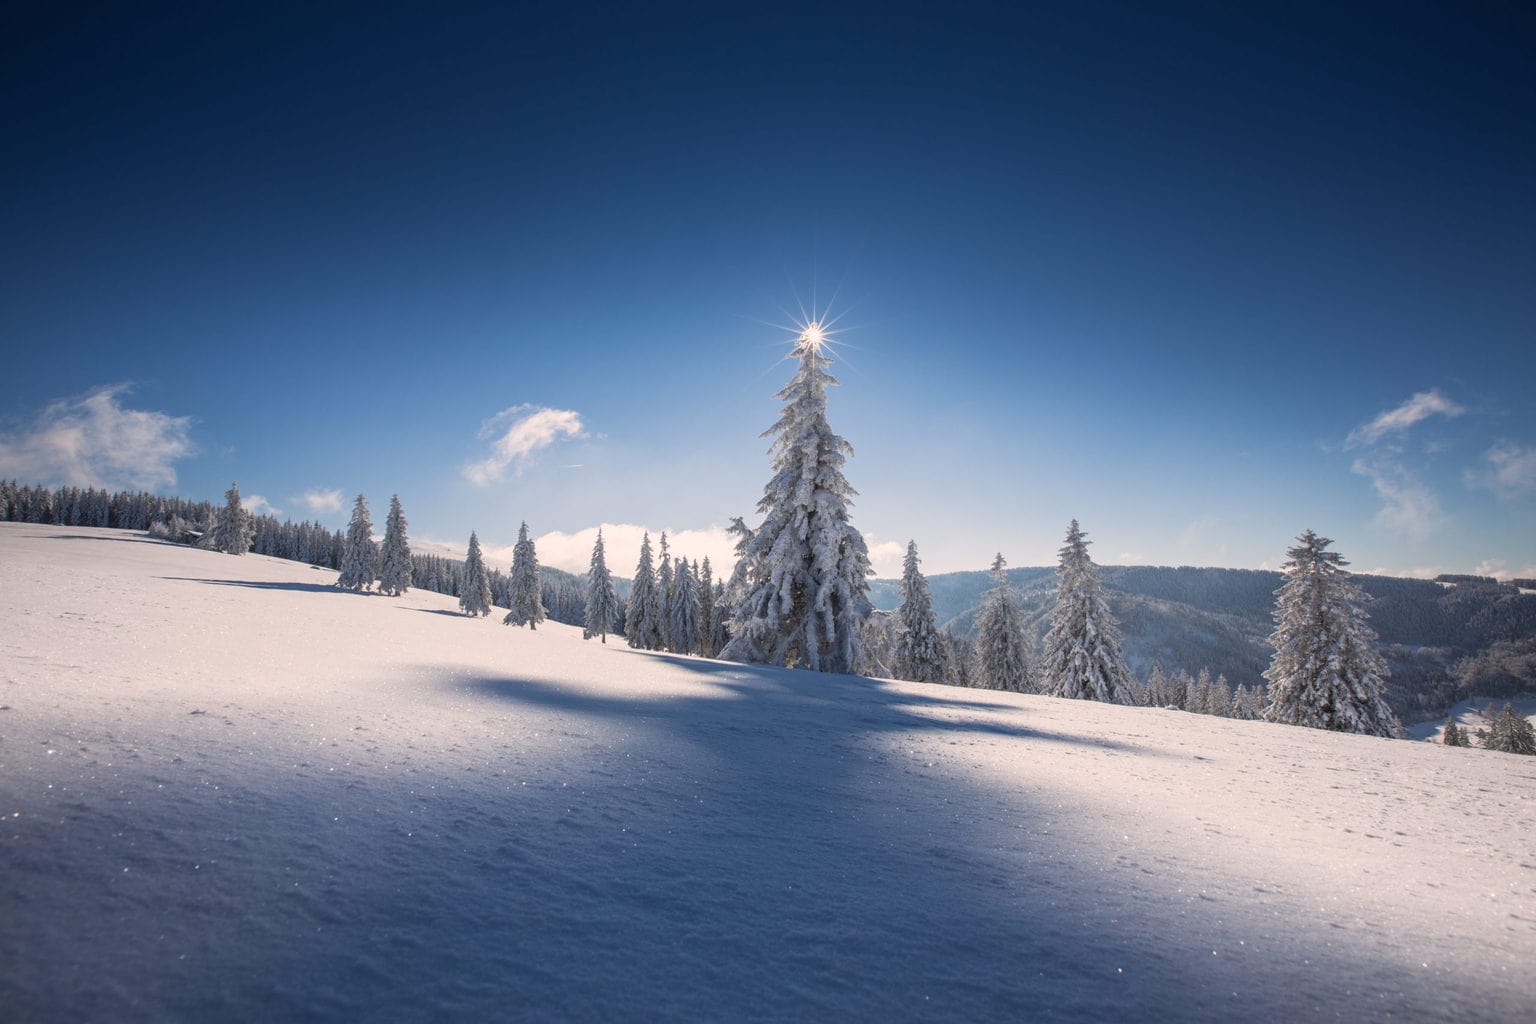 Prachtig winterlandschap in Duitsland wekt zin om te gaan skieën in de corona winter